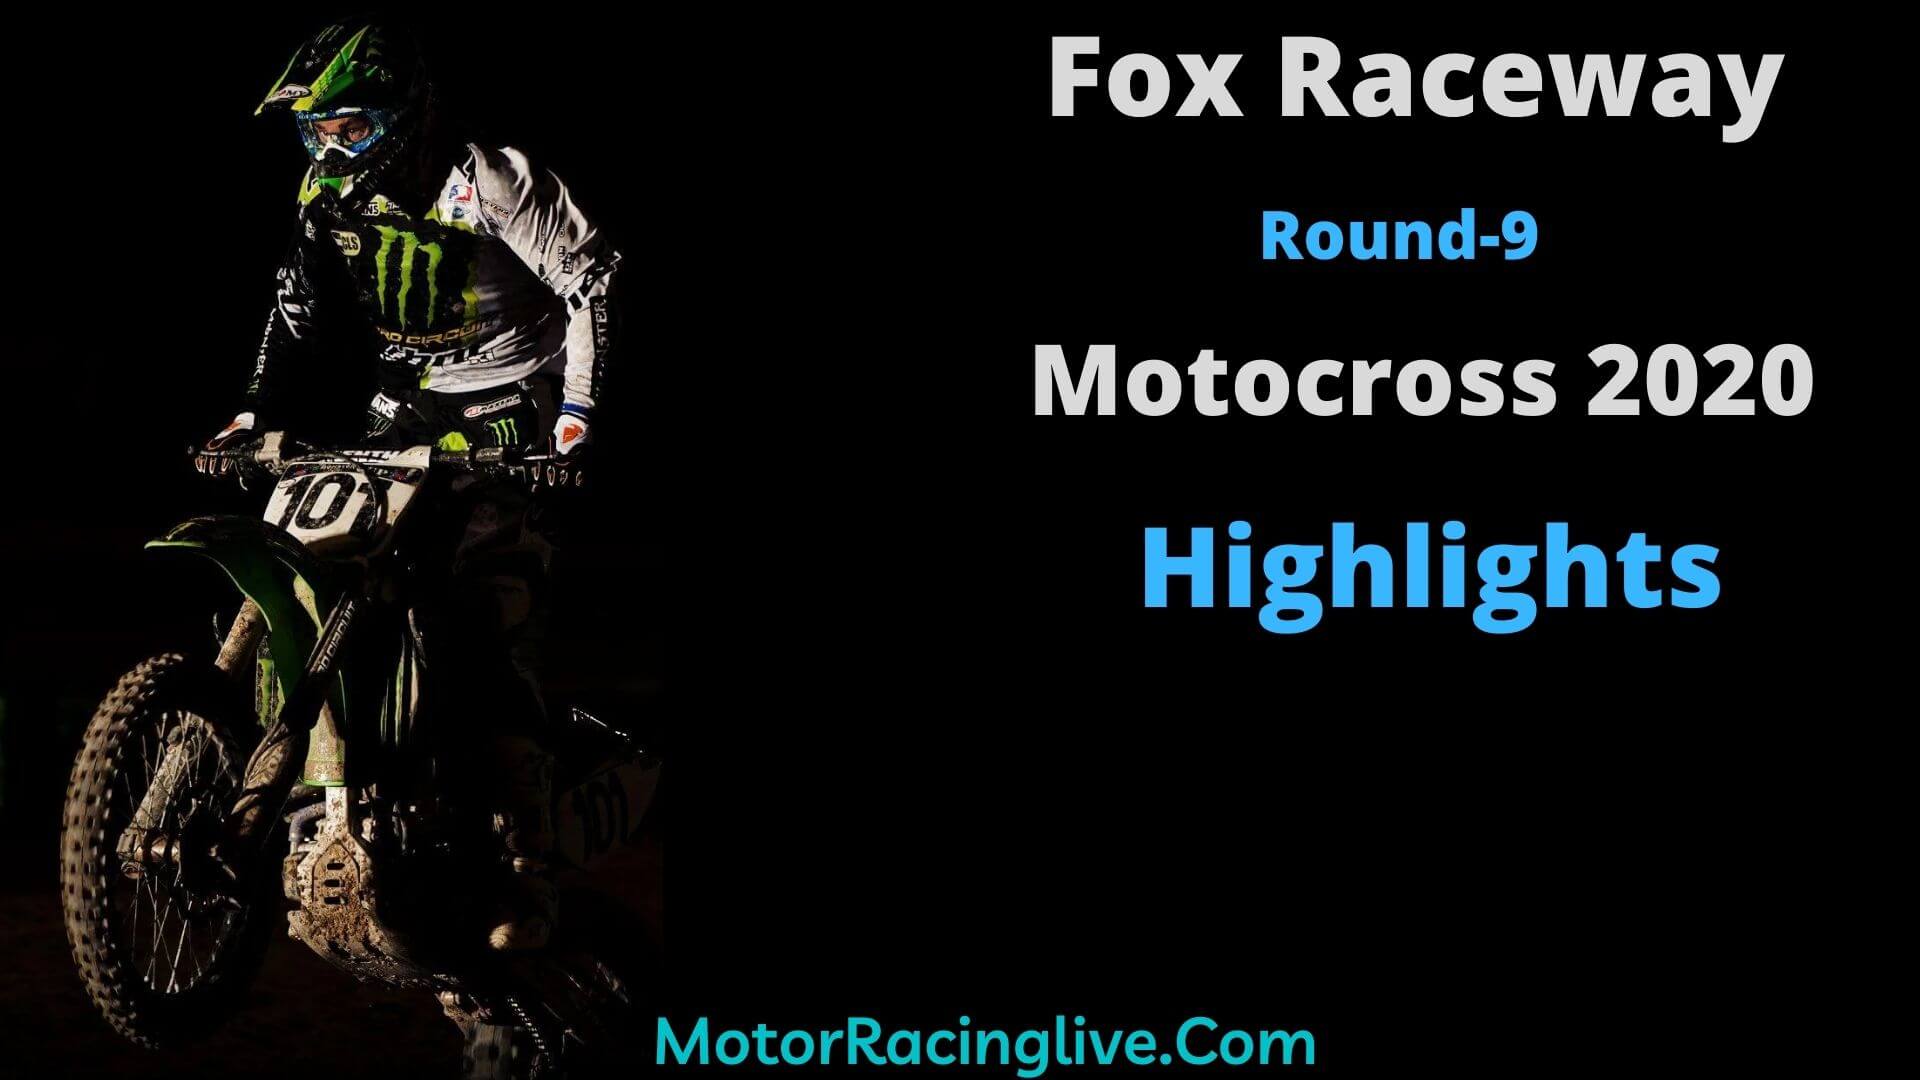 Fox Raceway Round 9 Highlights Motocross 2020